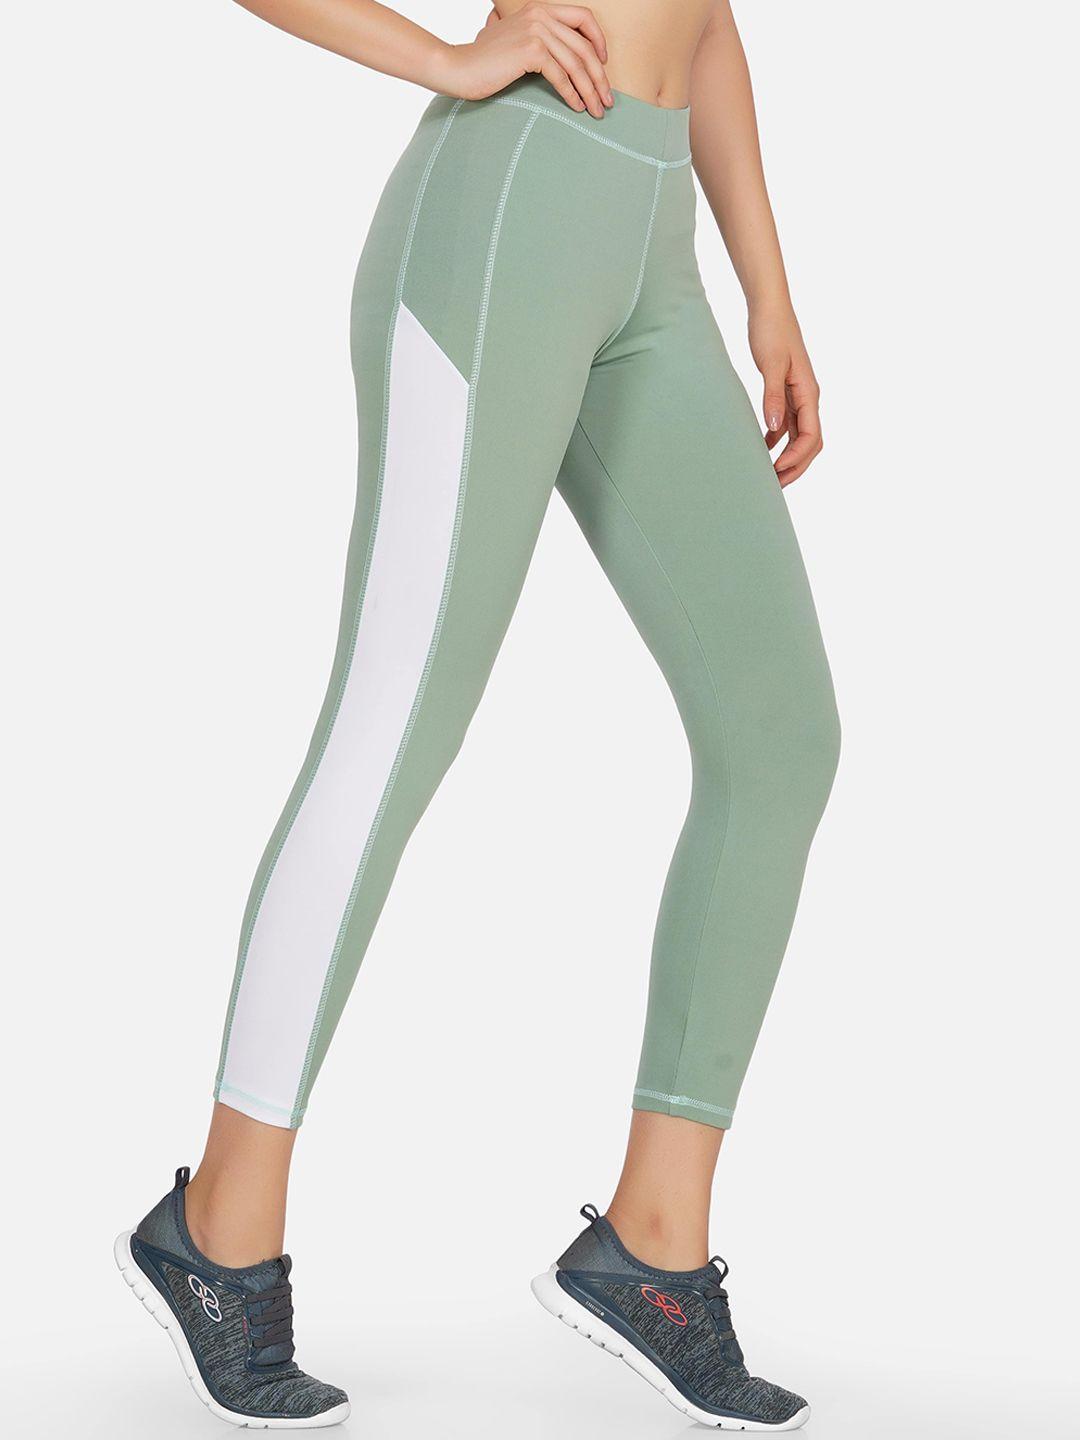 neu look fashion women sea green solid gym tights